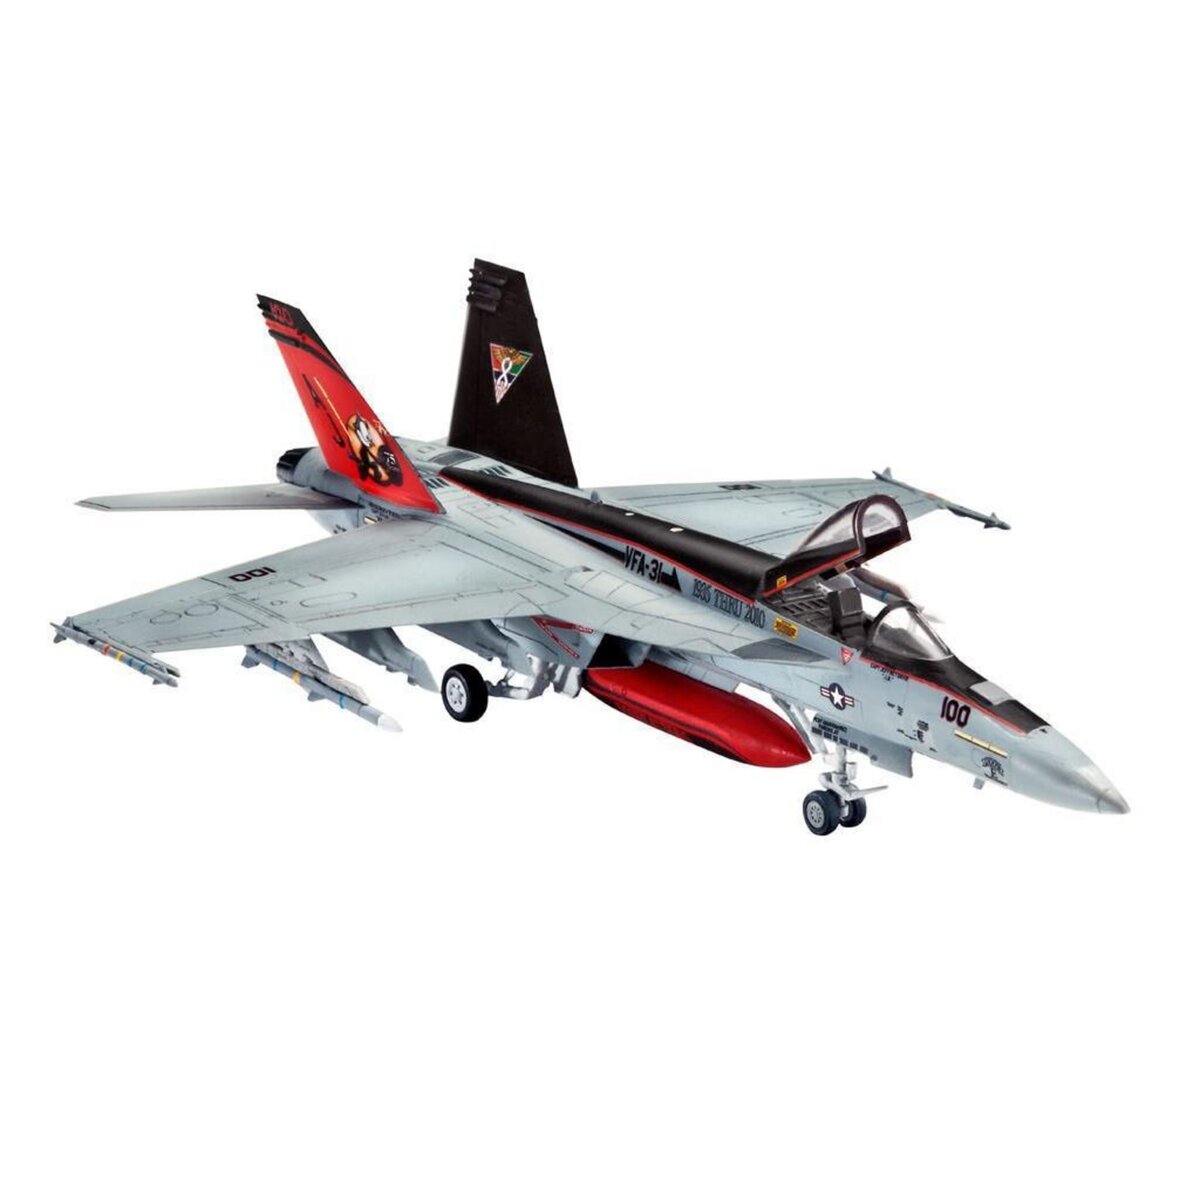 Maquette avion : F/A-18F Super Hornet - Revell - Rue des Maquettes